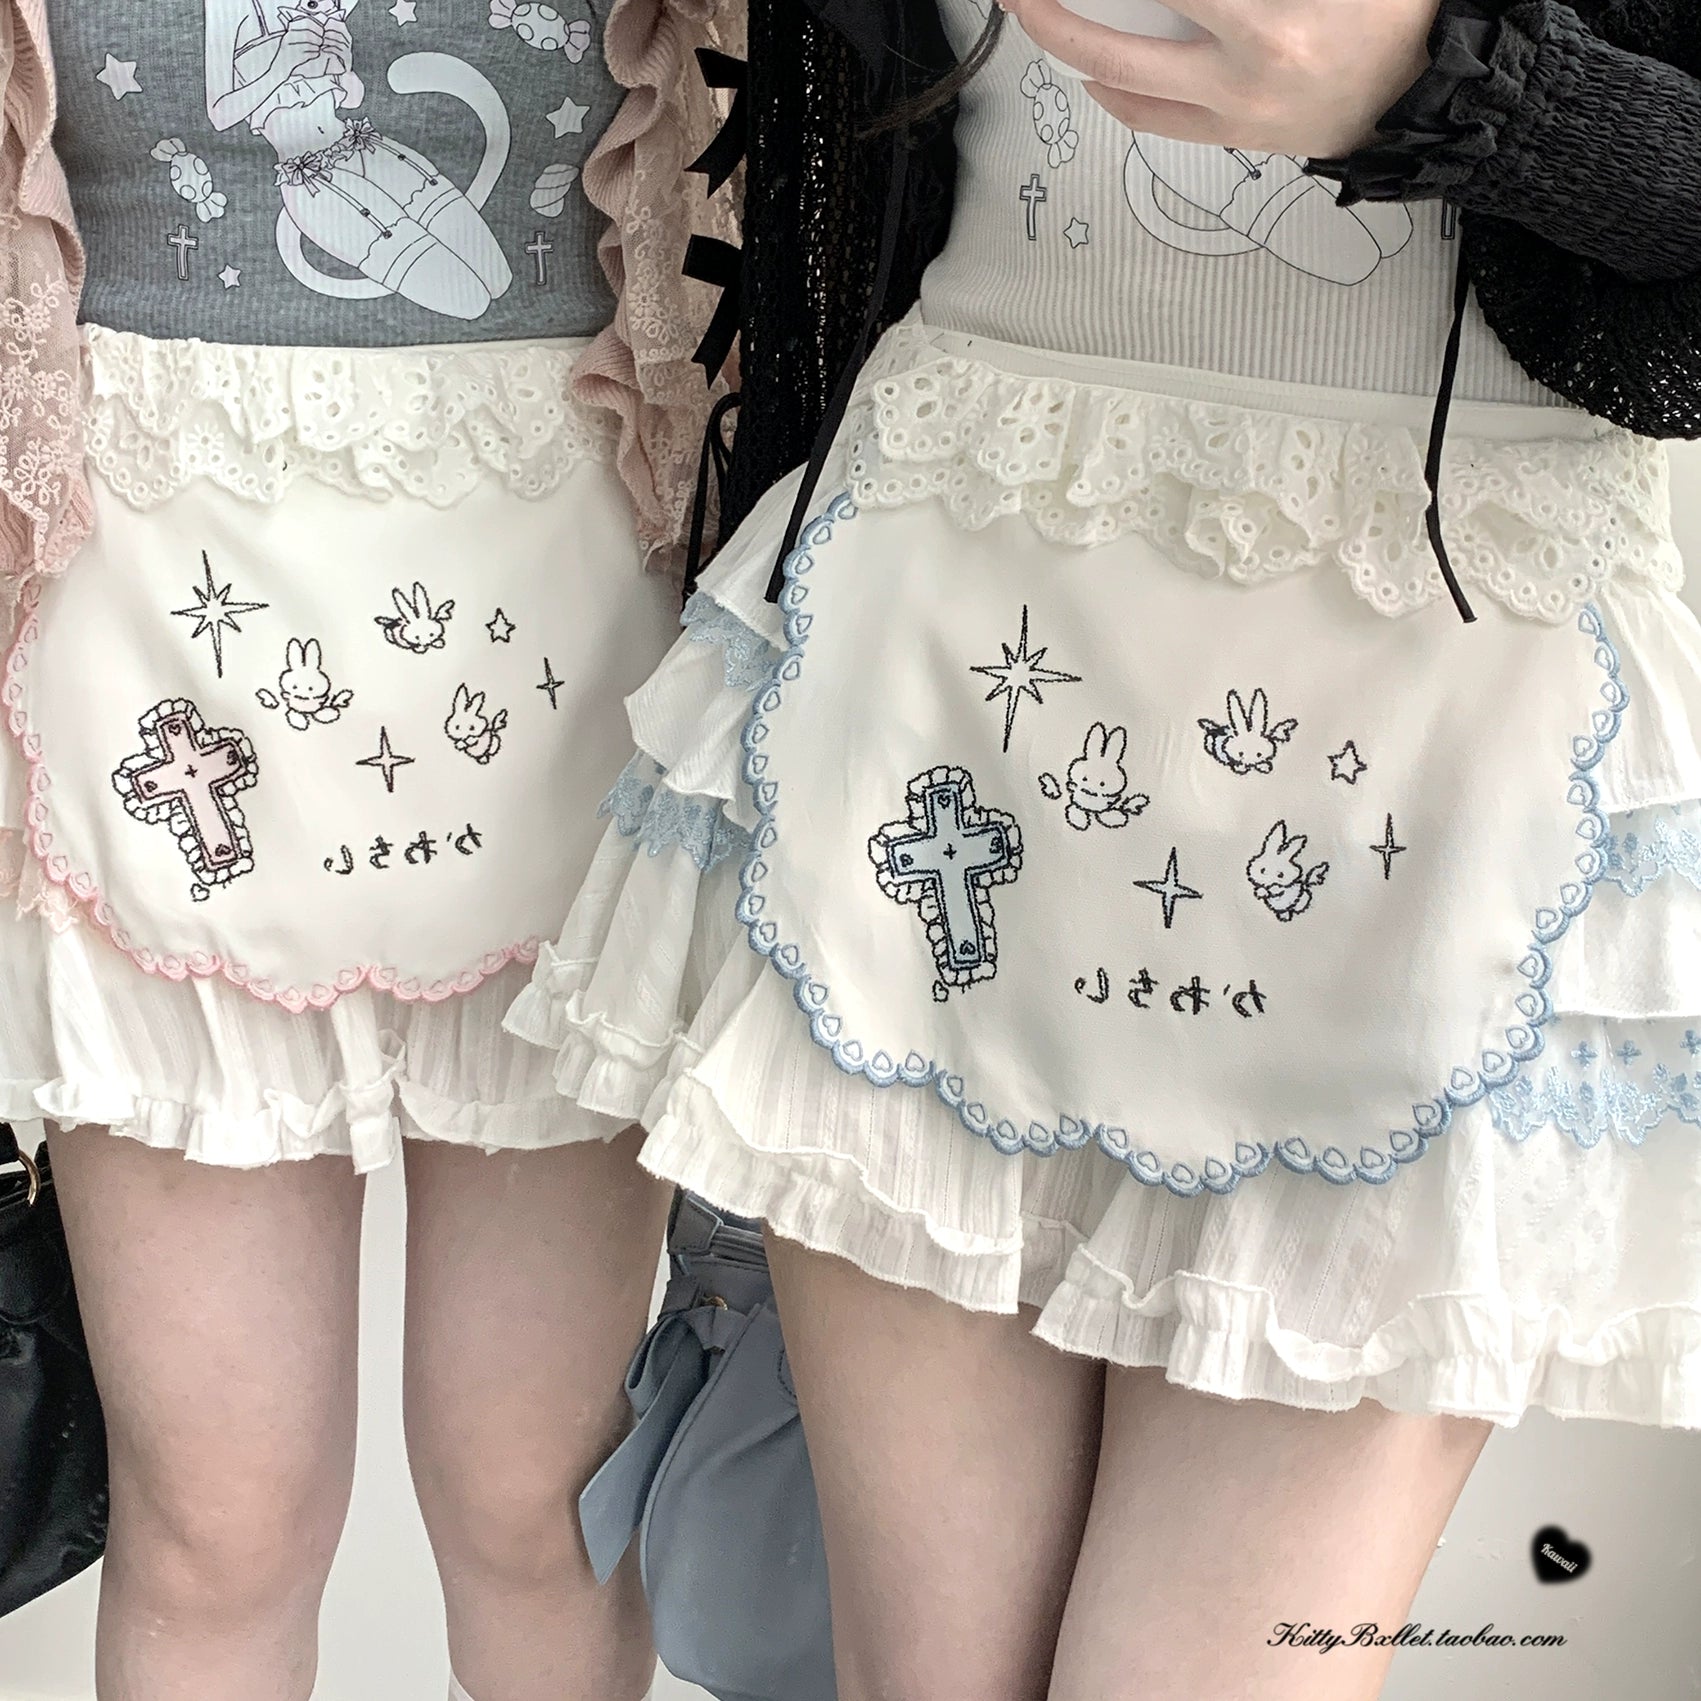 Ryousangata Skirt Lace Cake Skirt And Apron Set 36790:536158